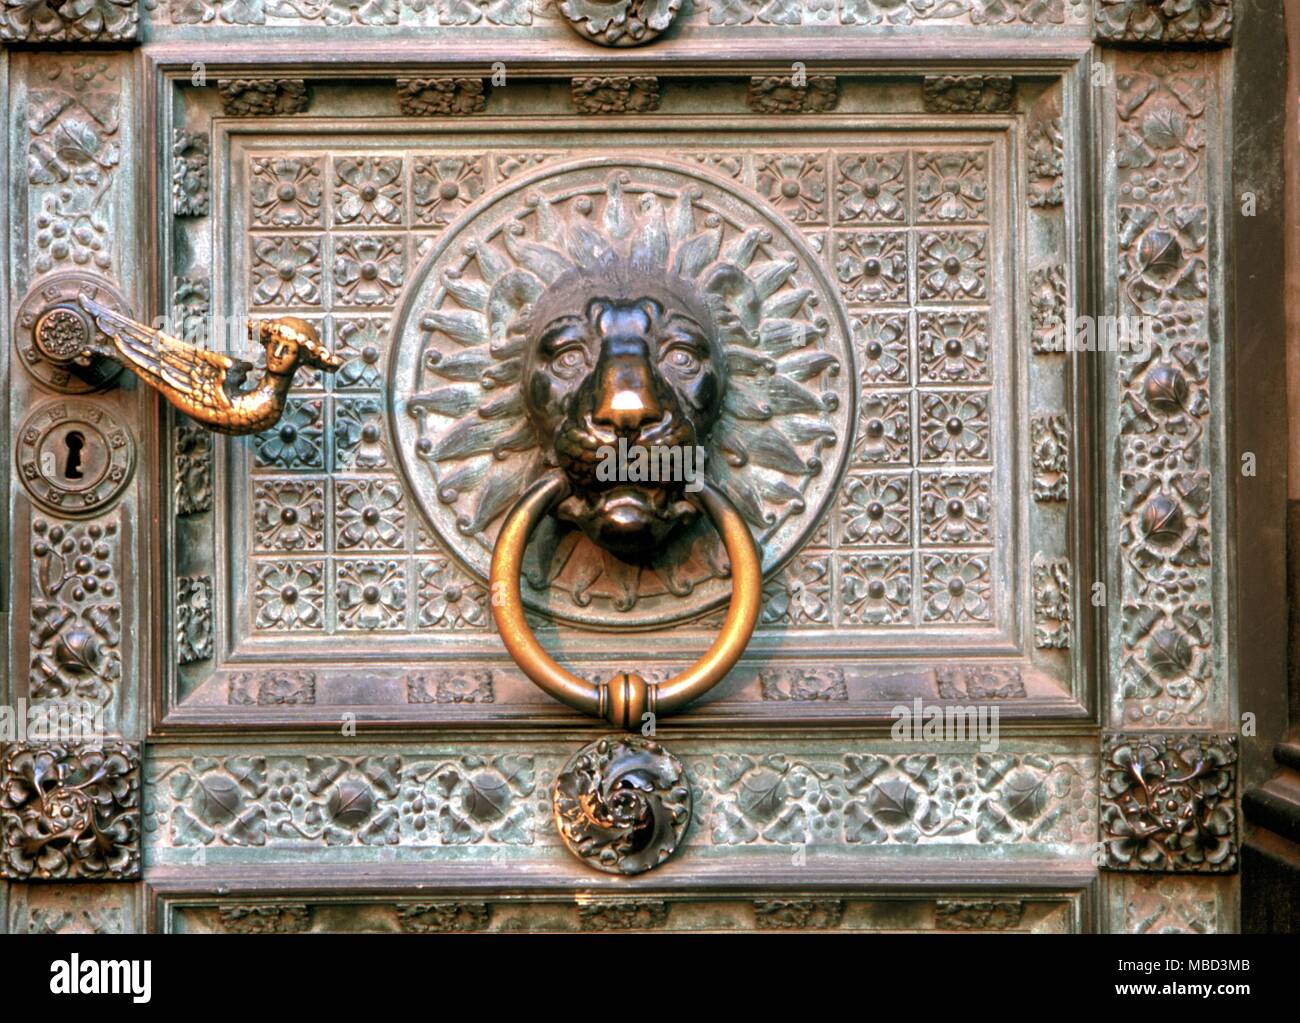 Simboli - Lion e Demon forme simboliche sull'ornato intagliare sulla porta della Cattedrale di Colonia Foto Stock